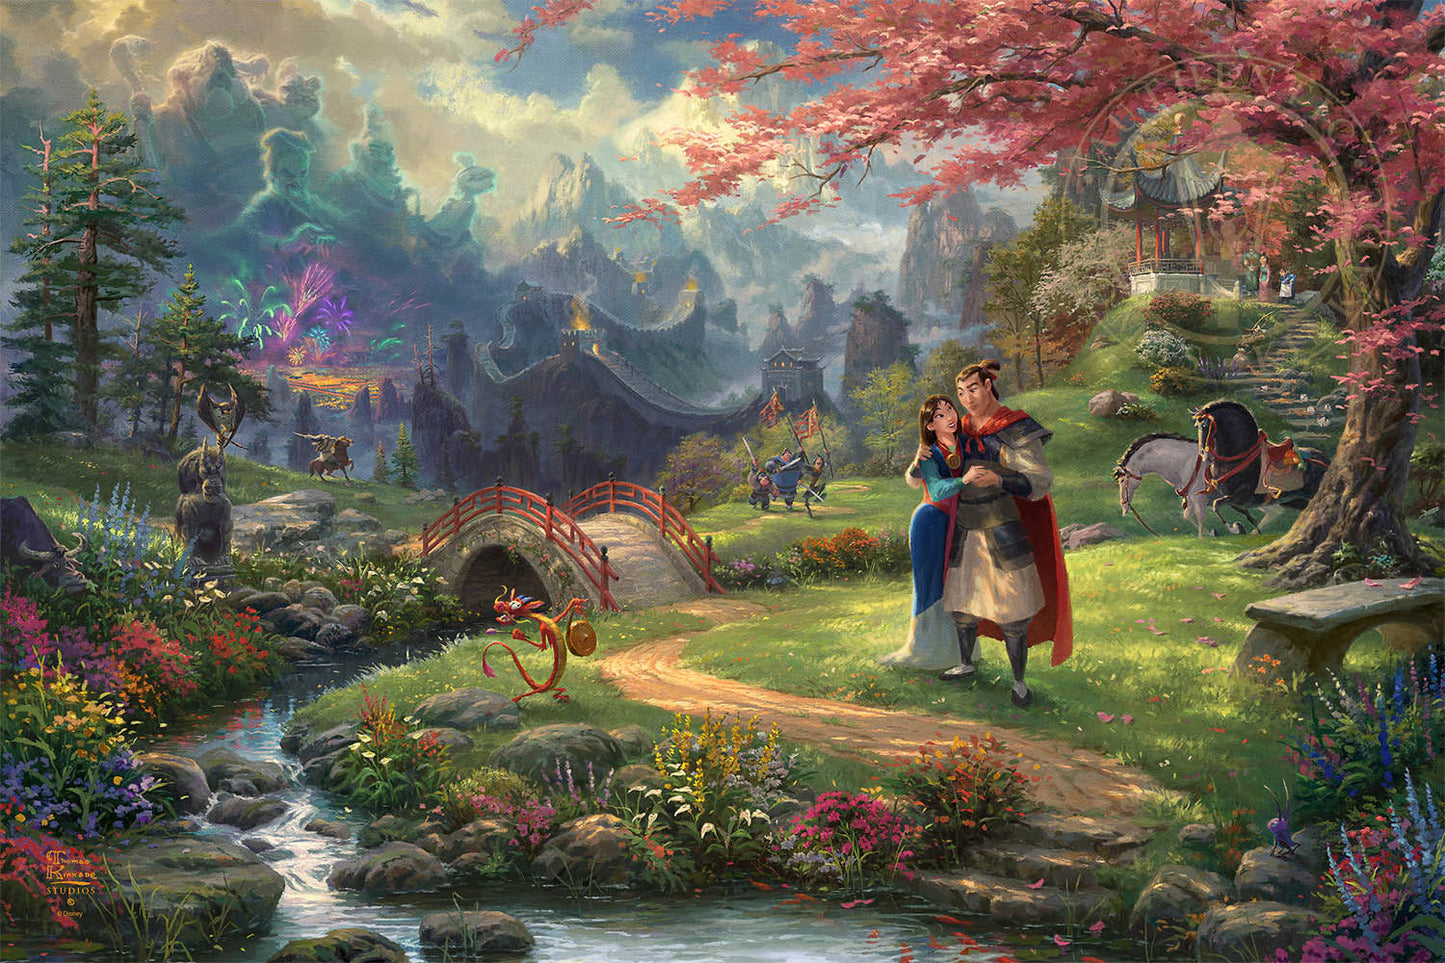 Thomas Kinkade Disney Dreams "Mulan Blossoms of Love" Canvas Giclee